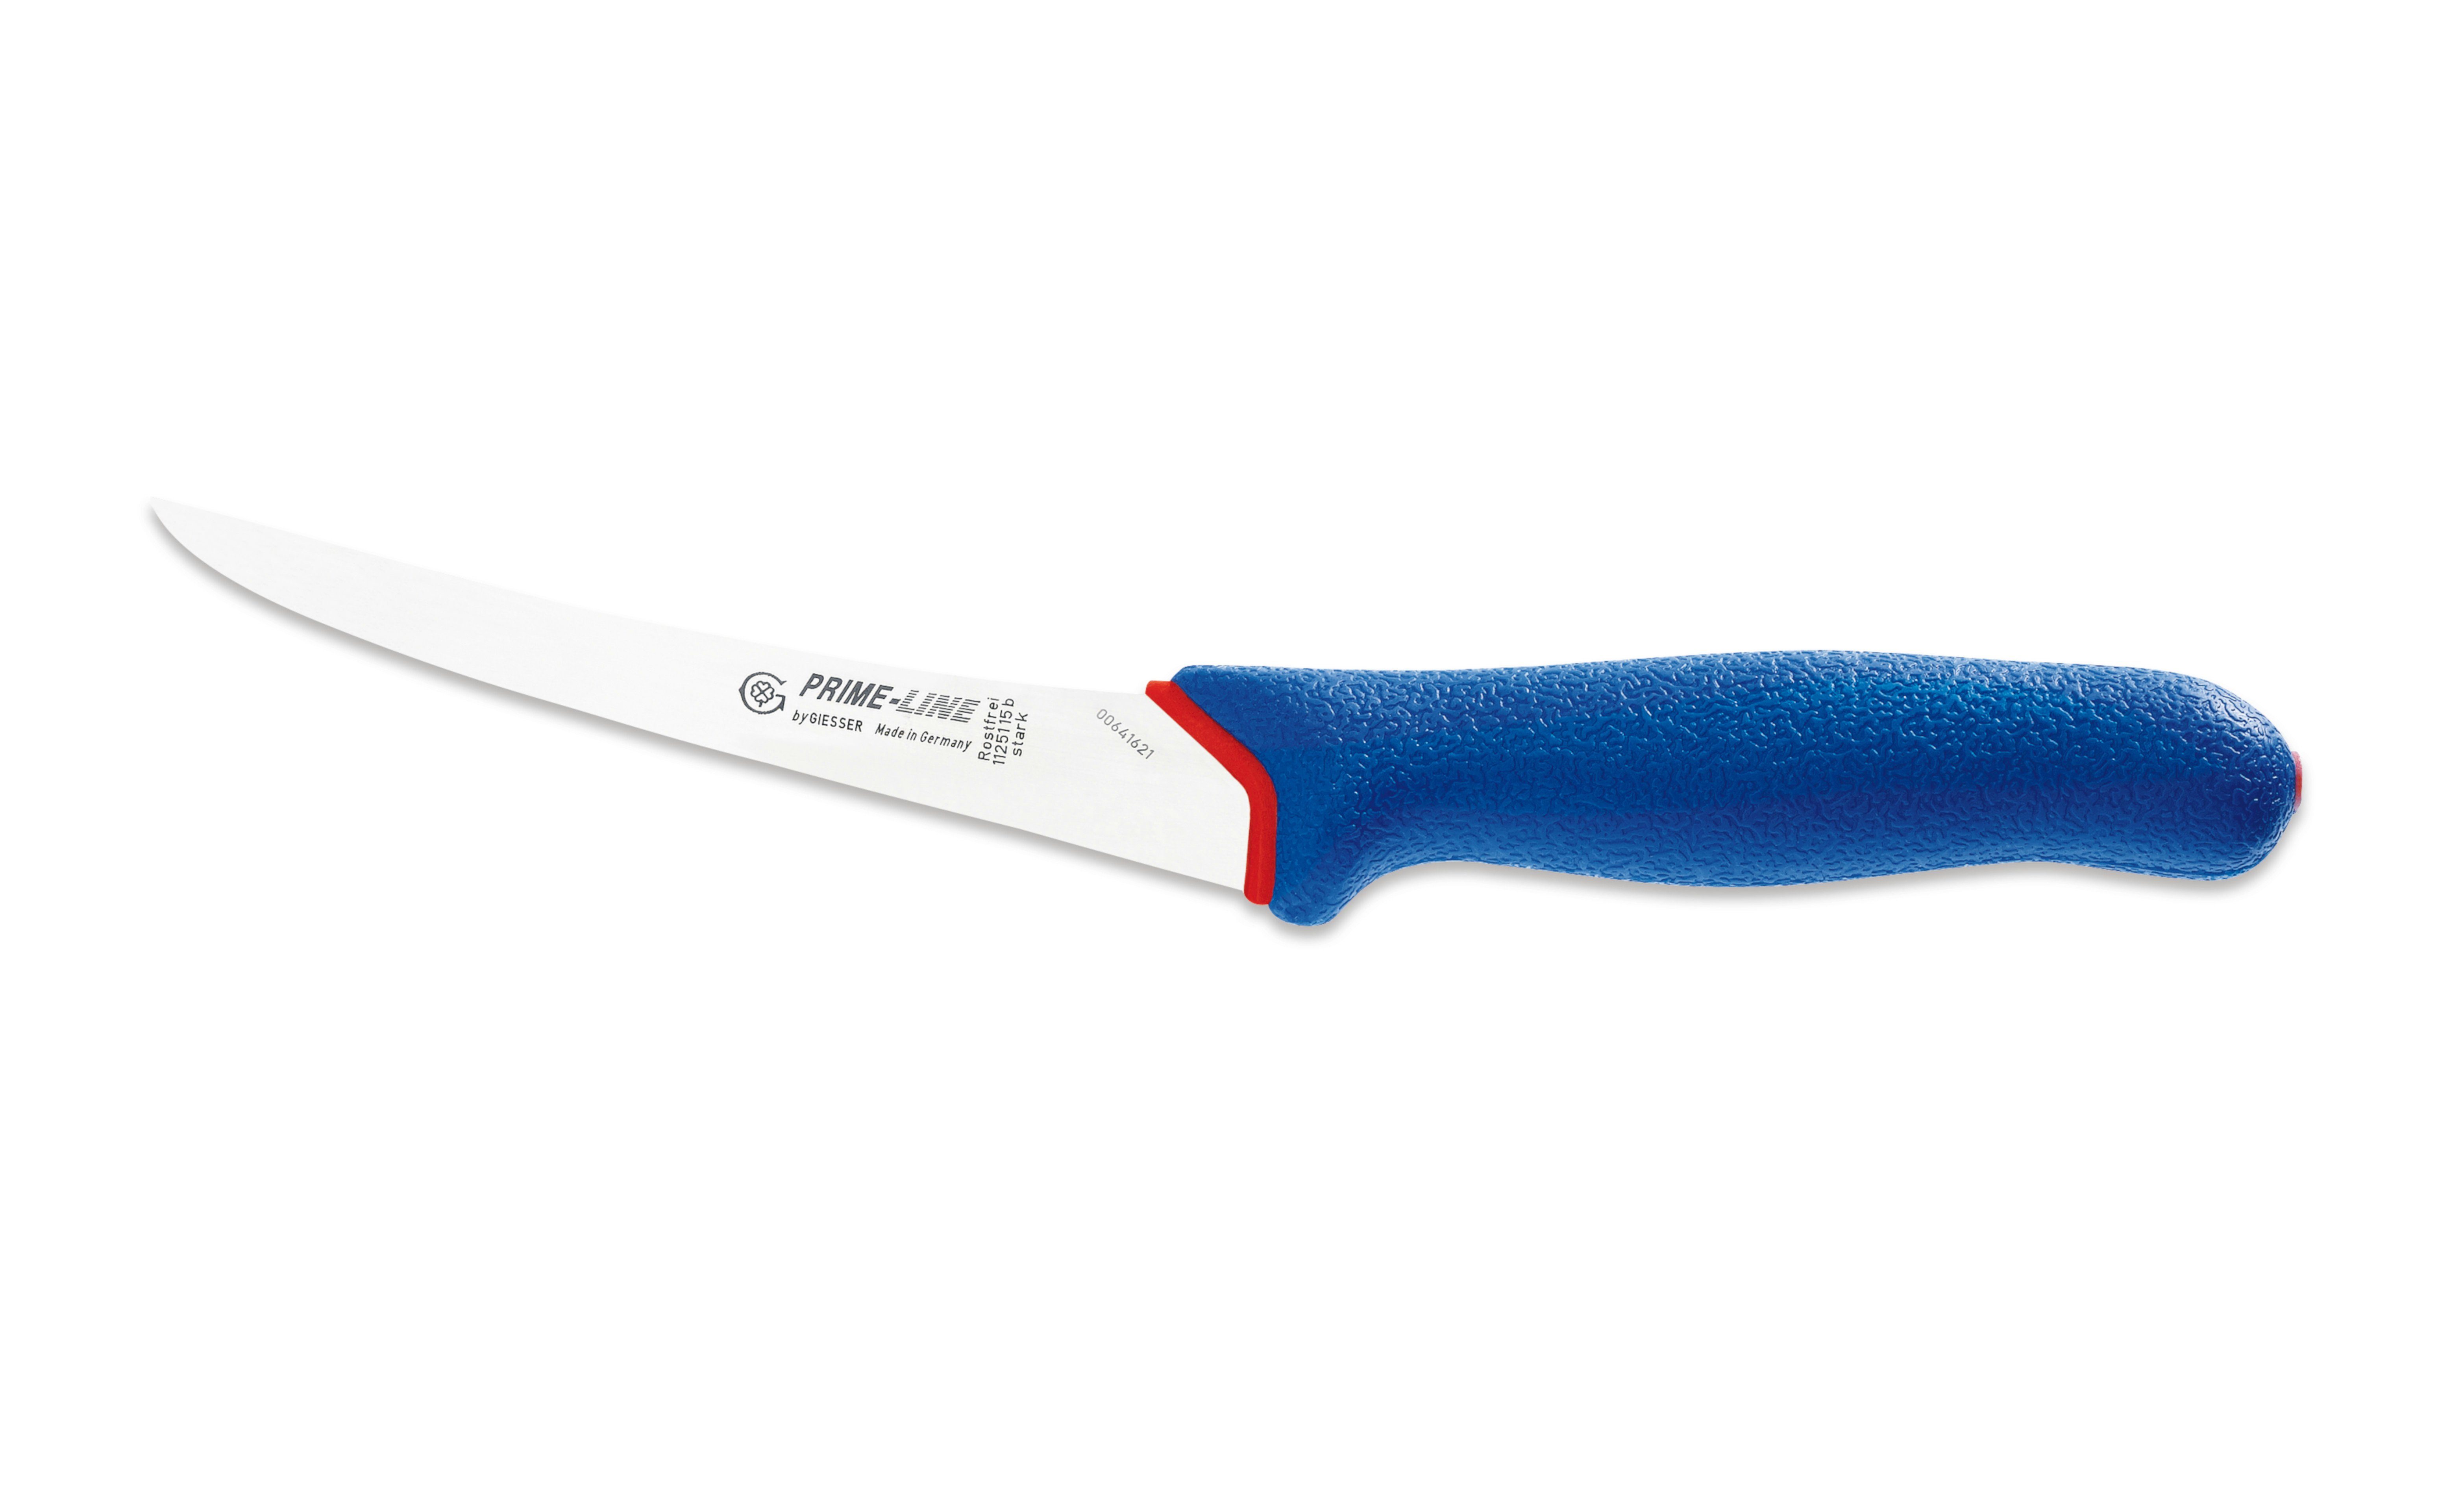 Messer Giesser blau Fleischermesser 11250 13/15, Griff PrimeLine, weicher Ausbeinmesser rutschfest,